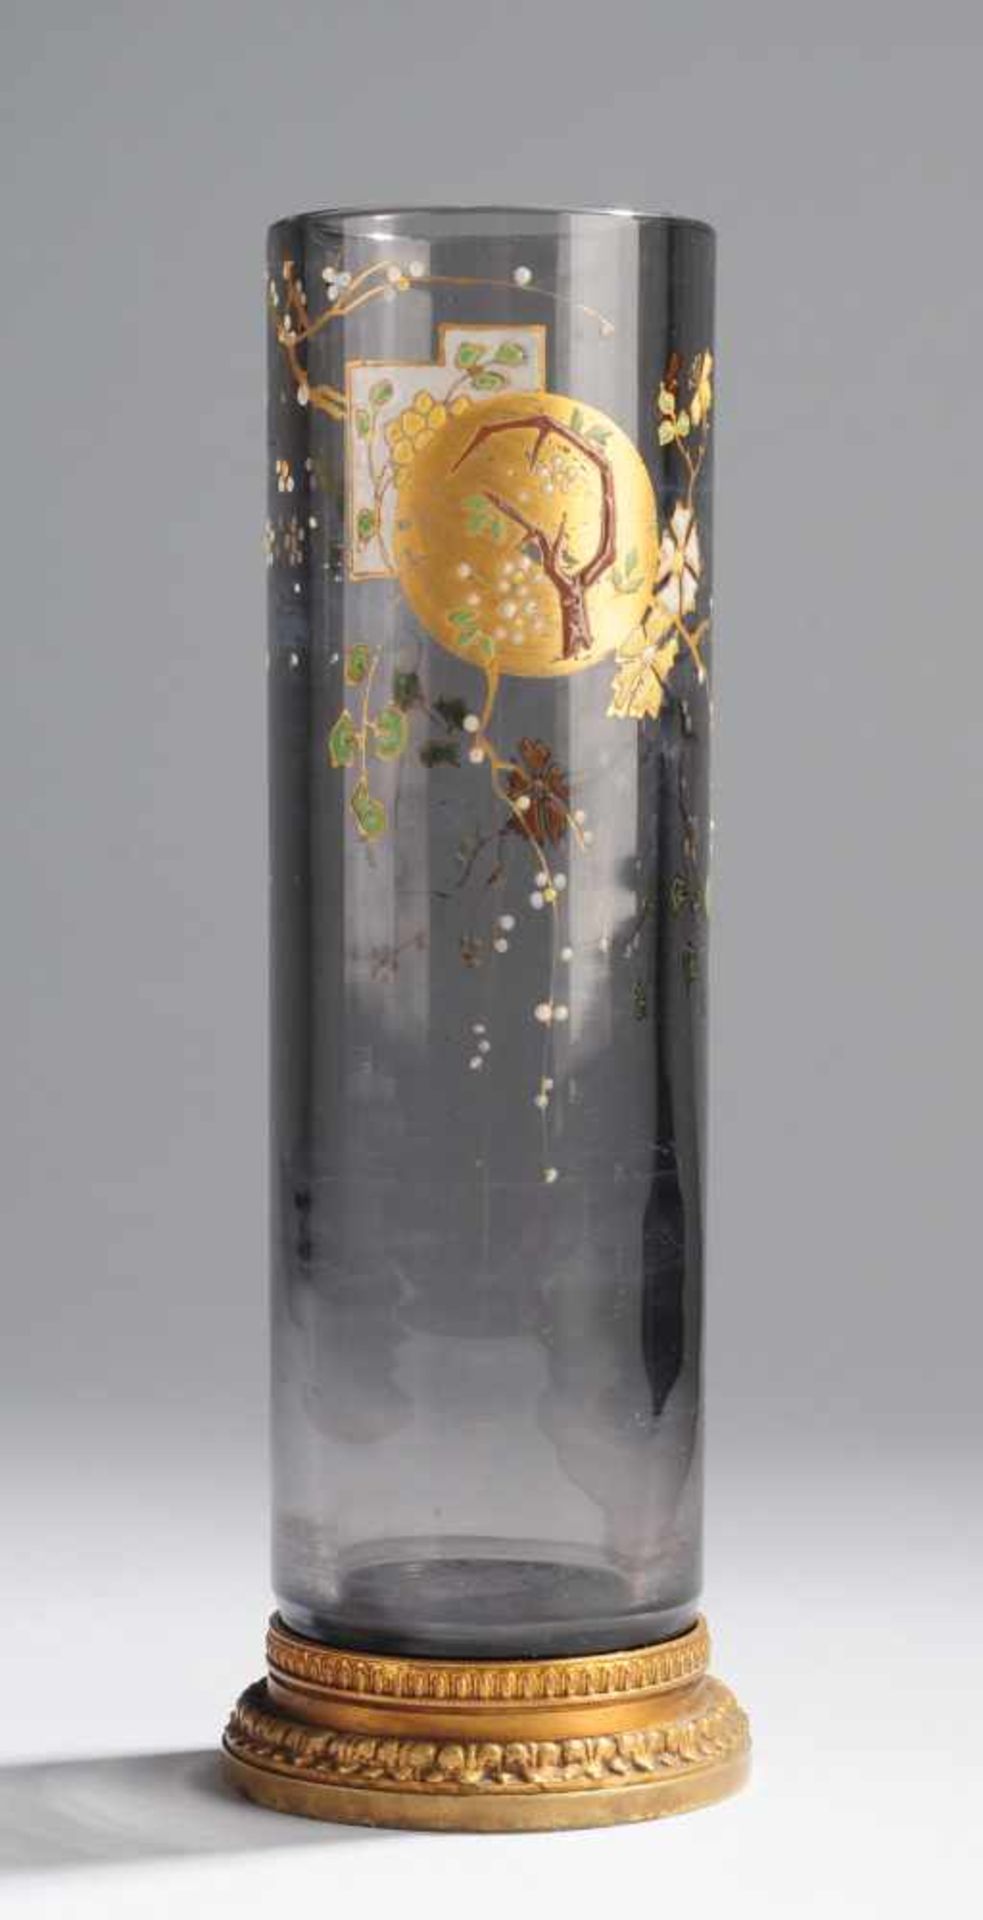 Jugendstil-VaseRauchquarzfarbenes Glas. Formgeblasen, ausgekugelter Abriss. Zylindrischer Korpus.